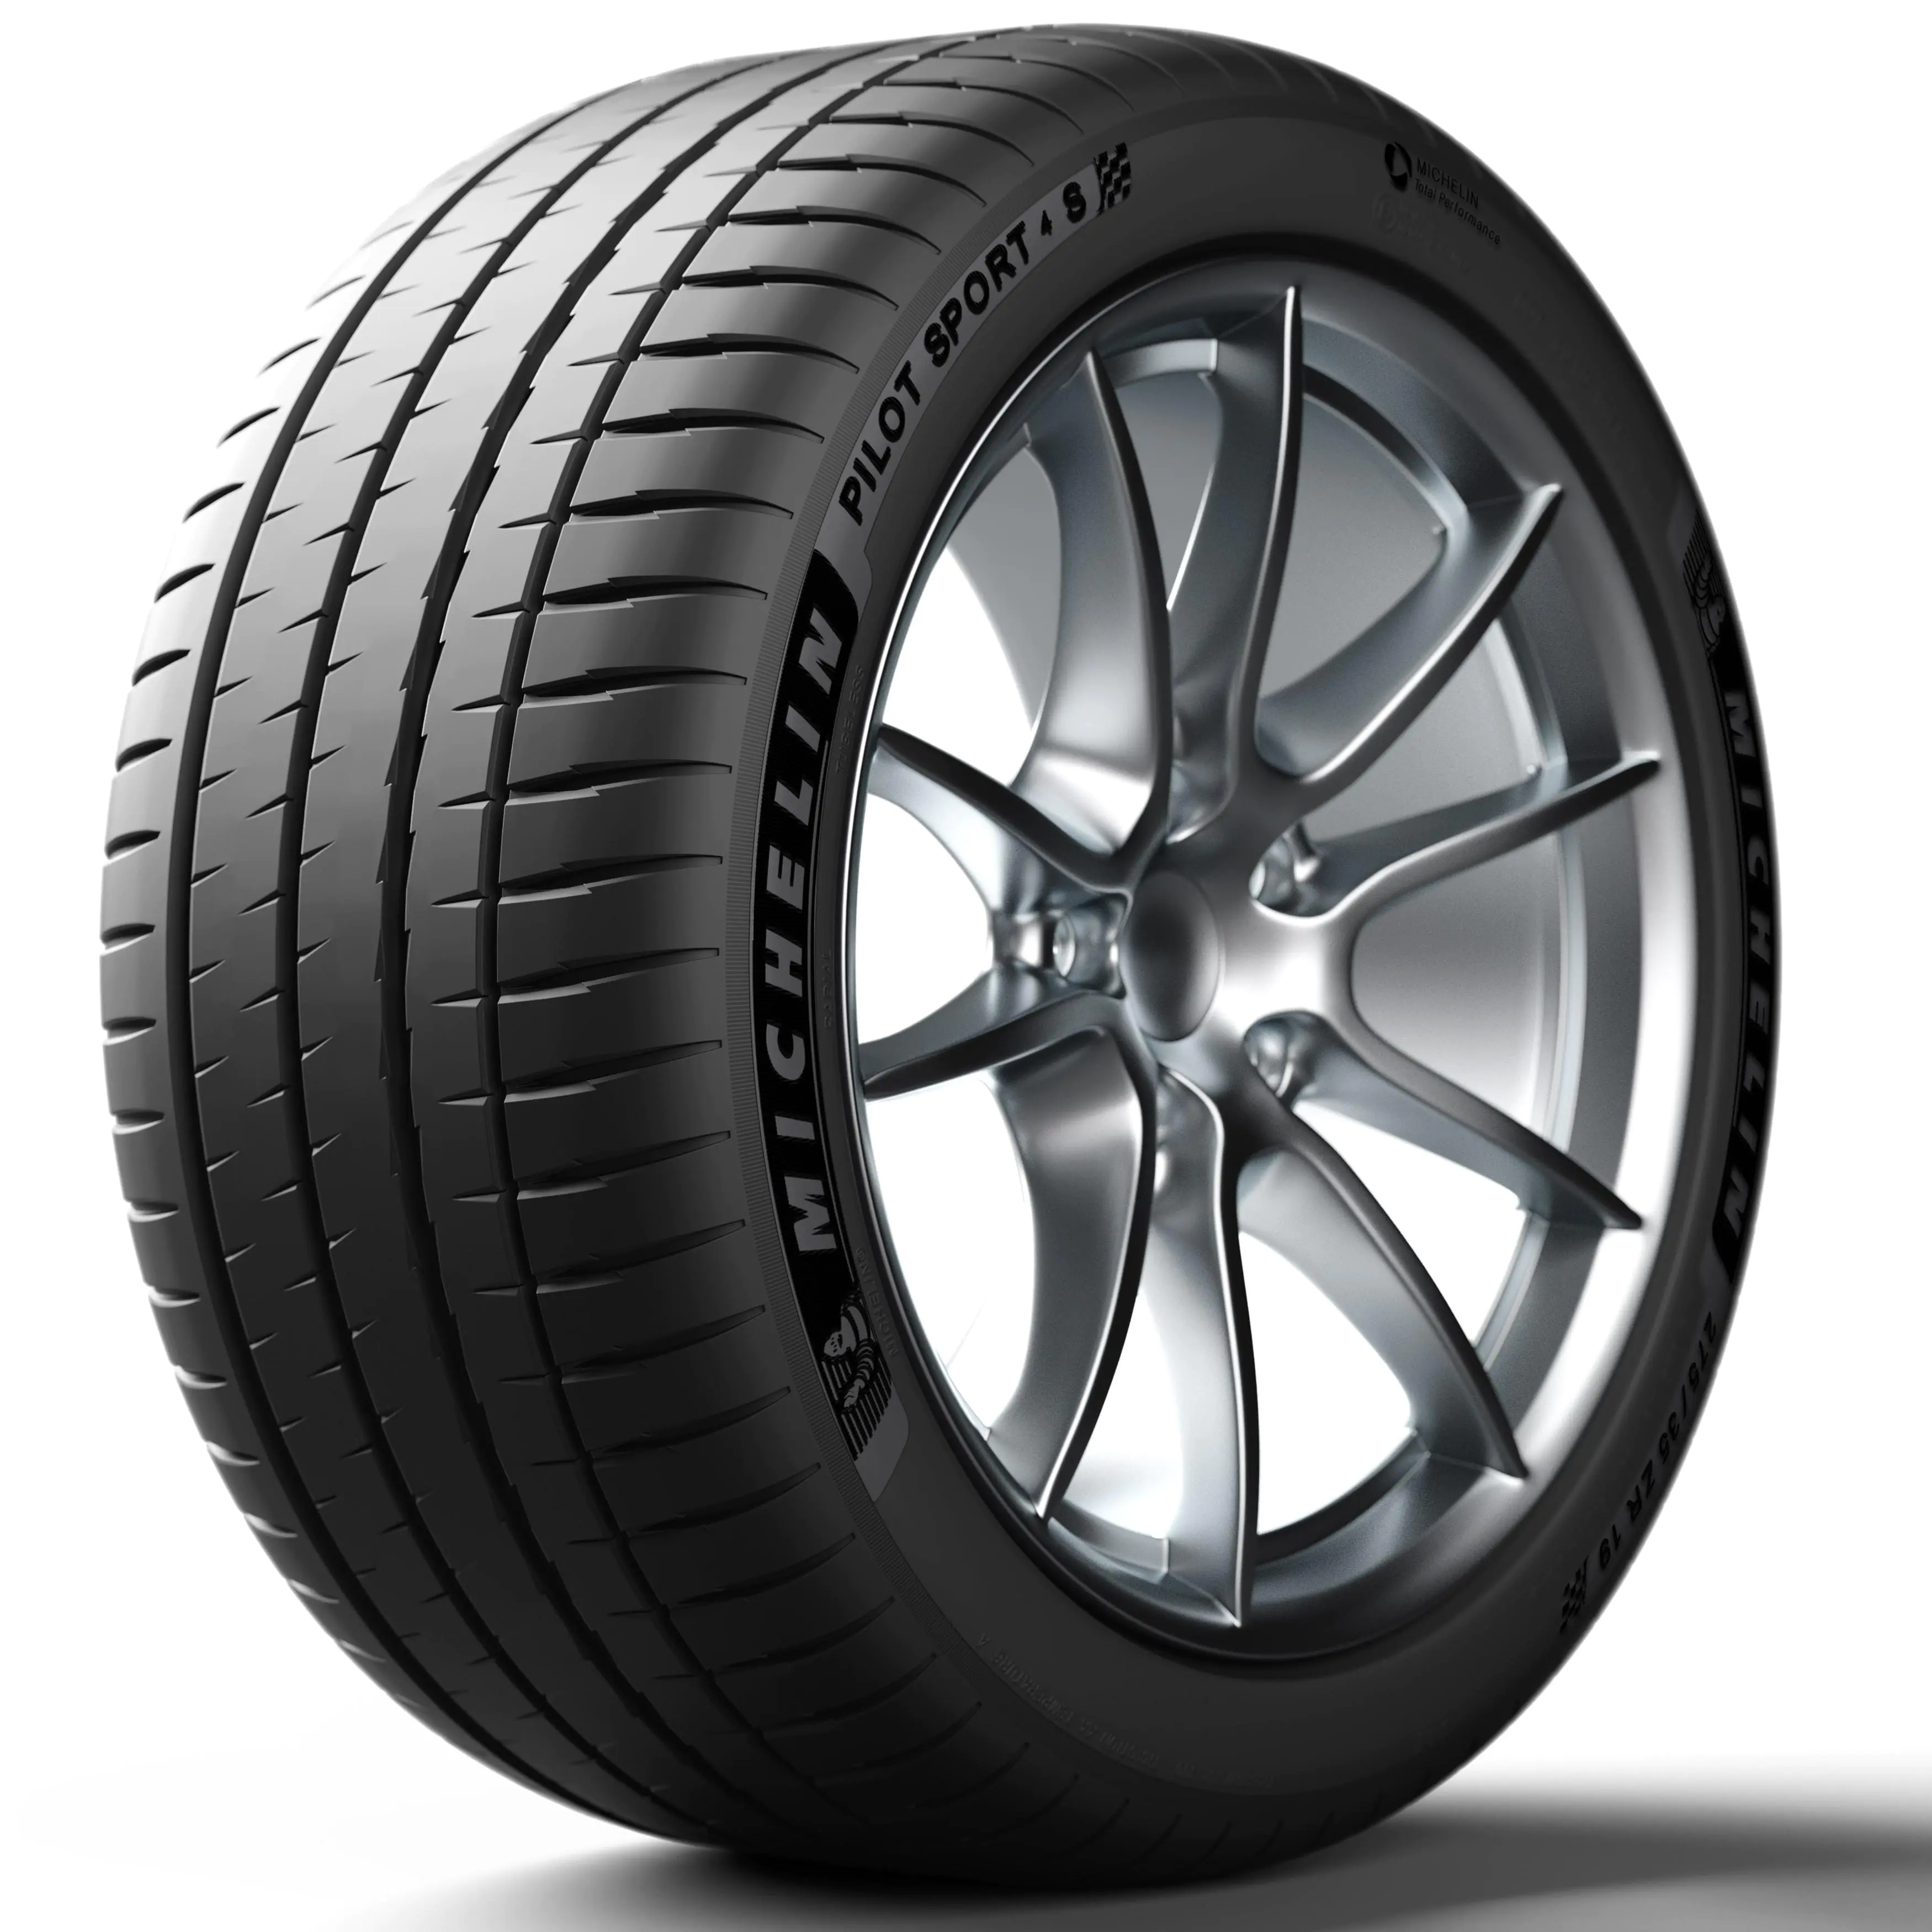 Michelin Michelin 255/35 R19 96Y Pilotsport4s XL pneumatici nuovi Estivo 